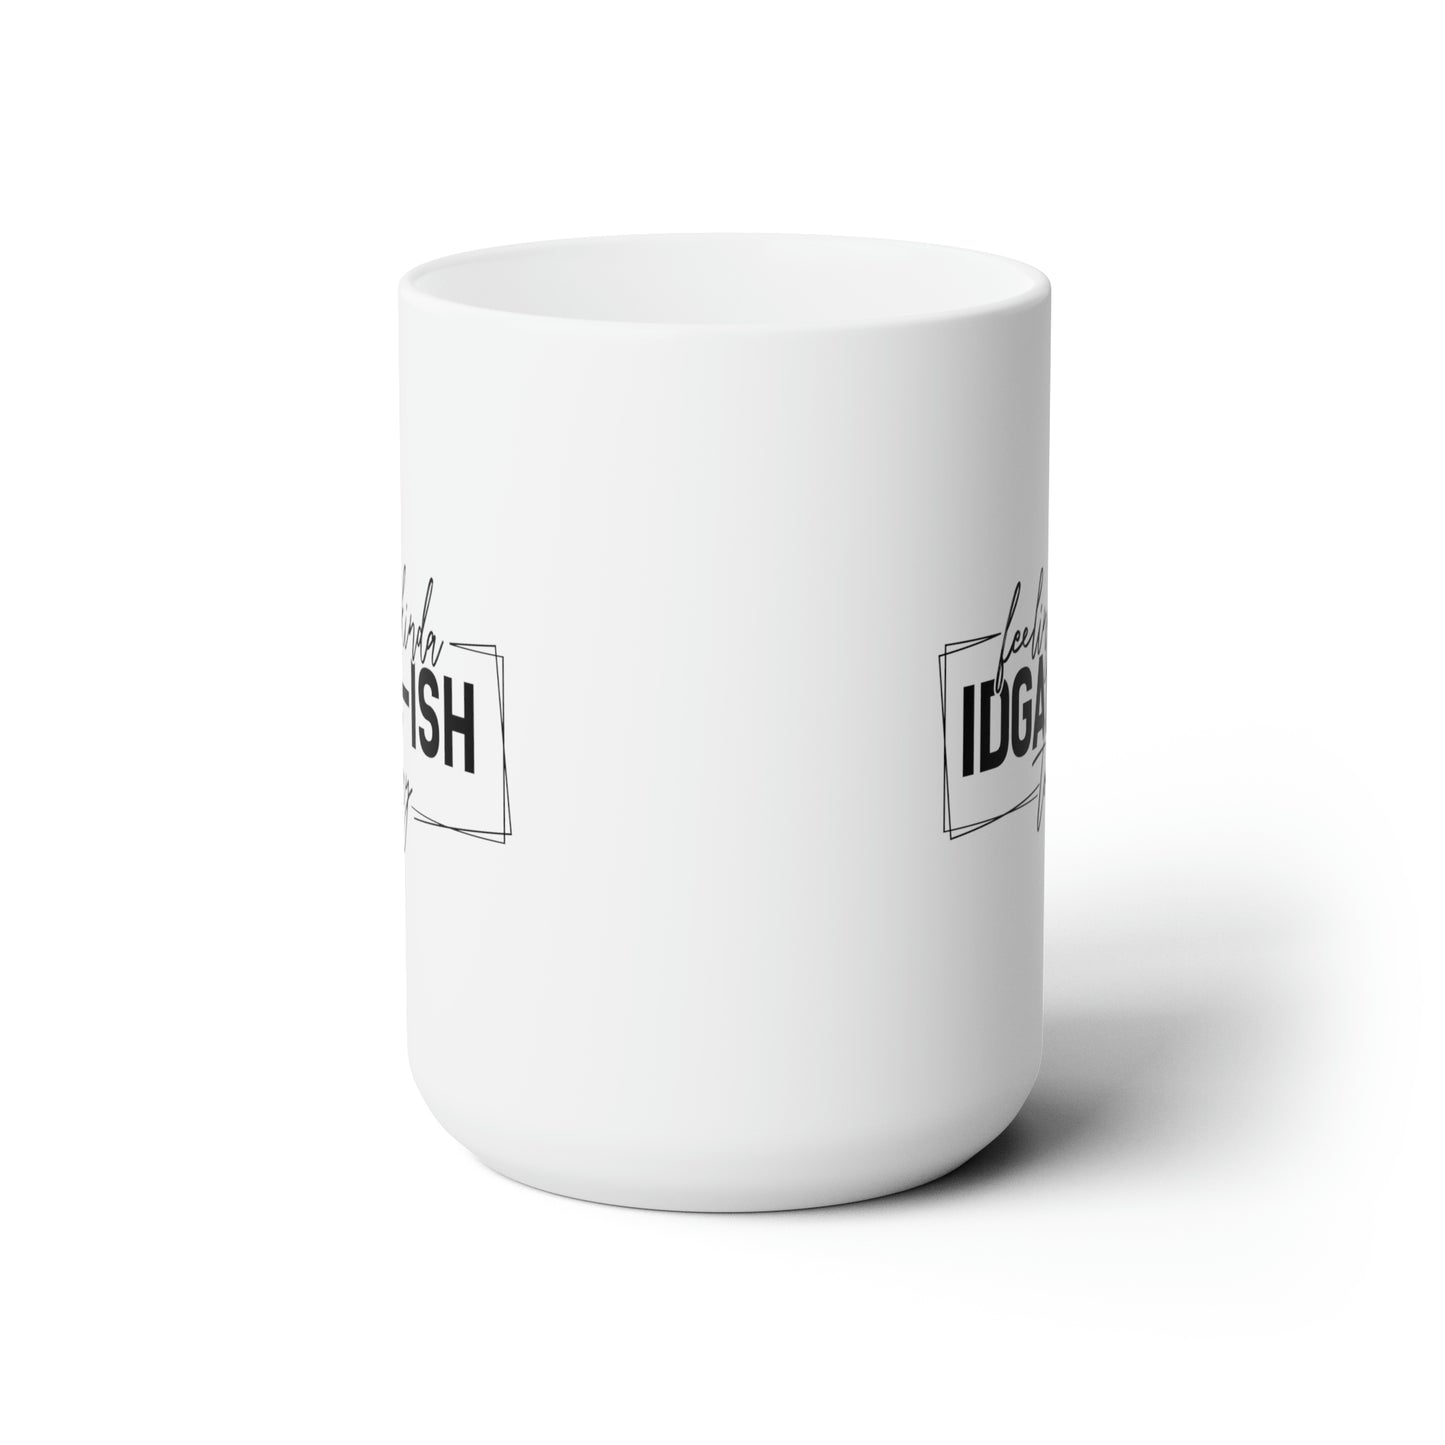 IDGAF Mug For Sarcastic Coffee Mug For Don't Care Cup